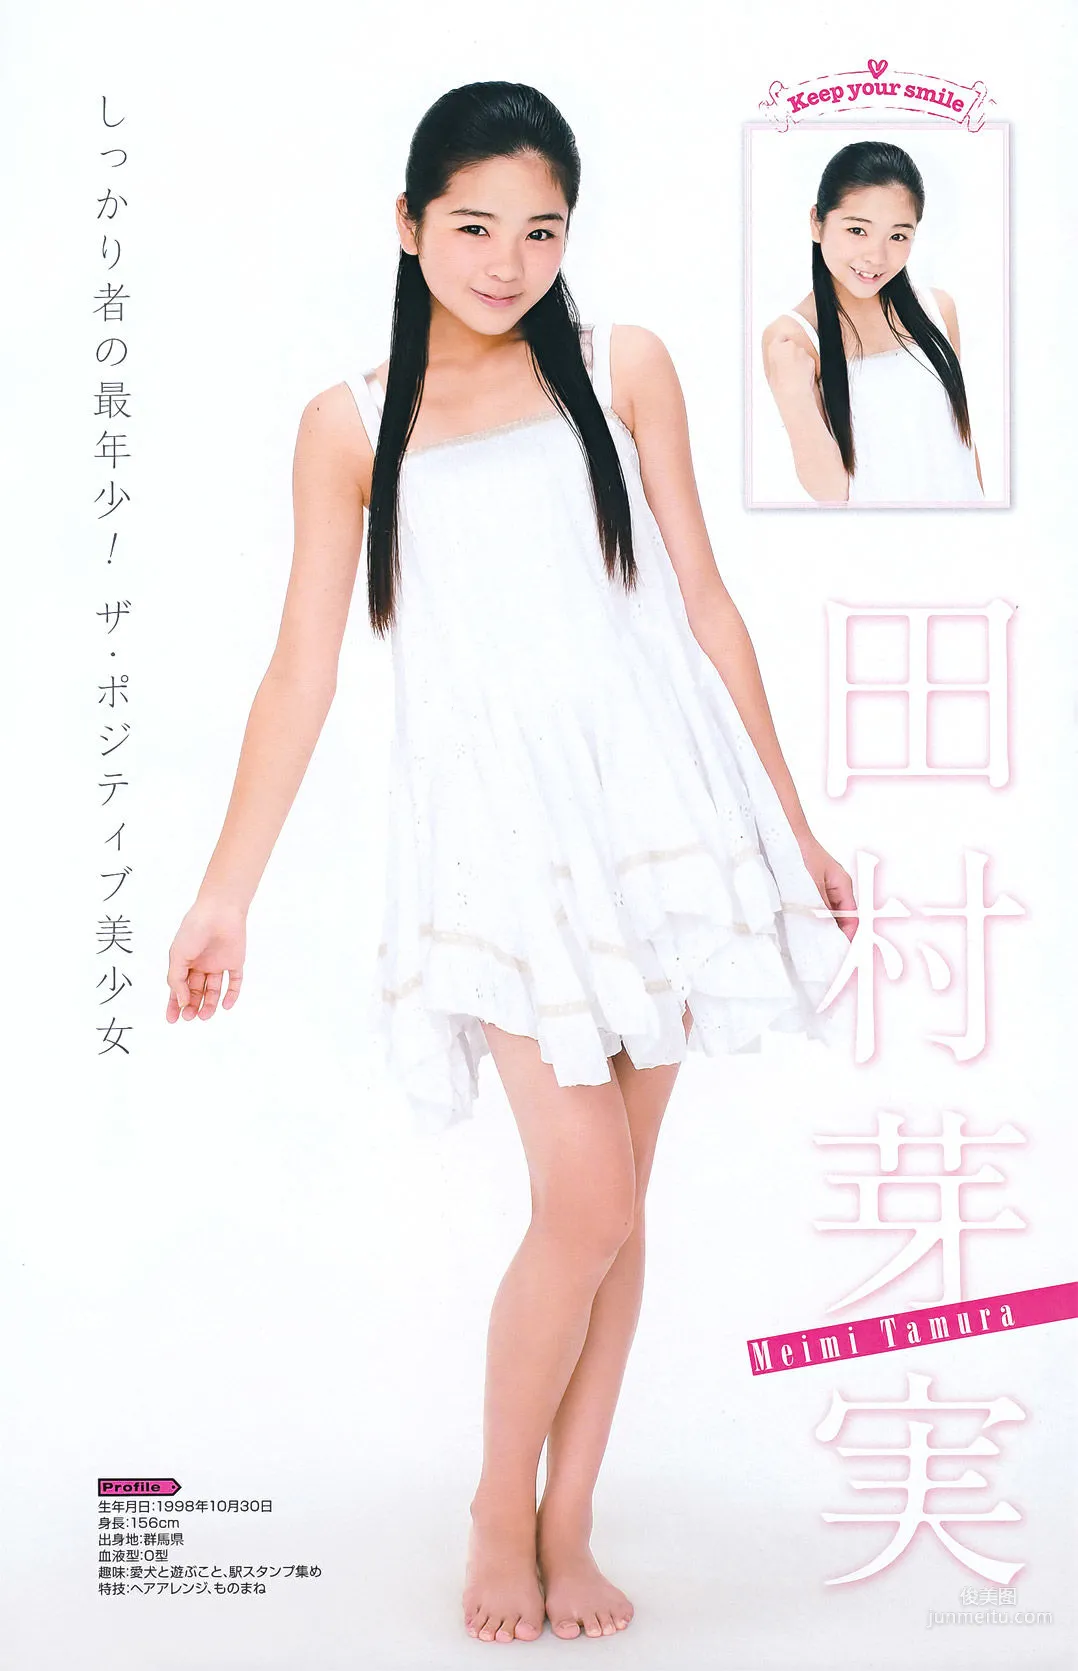 [Young Gangan] 真野恵里菜 Erina Mano 2011年No.20 写真杂志12